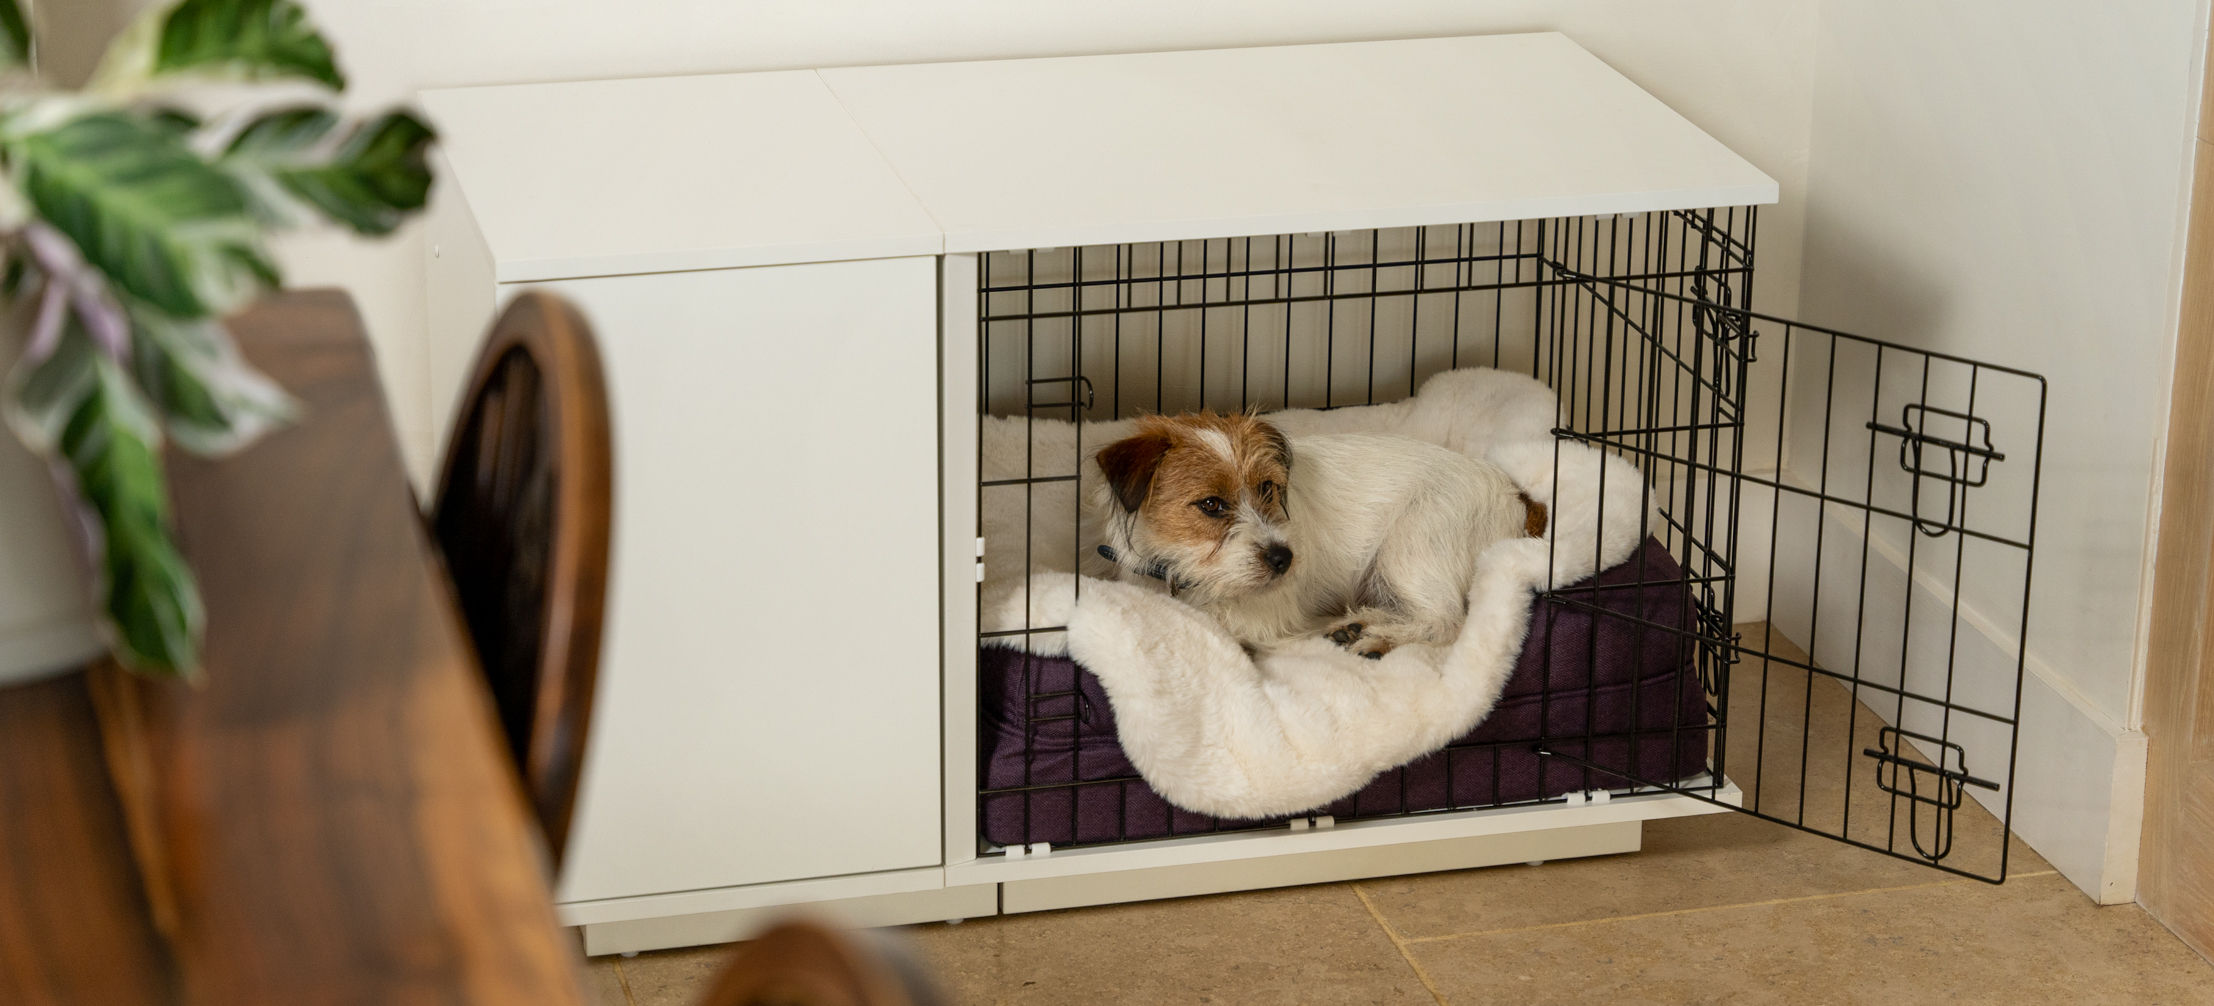 Ein Jack Russell Terrier in seiner Fido Hundebox mit einer luxuriösen Hundedecke in Schaffellimitat-id=